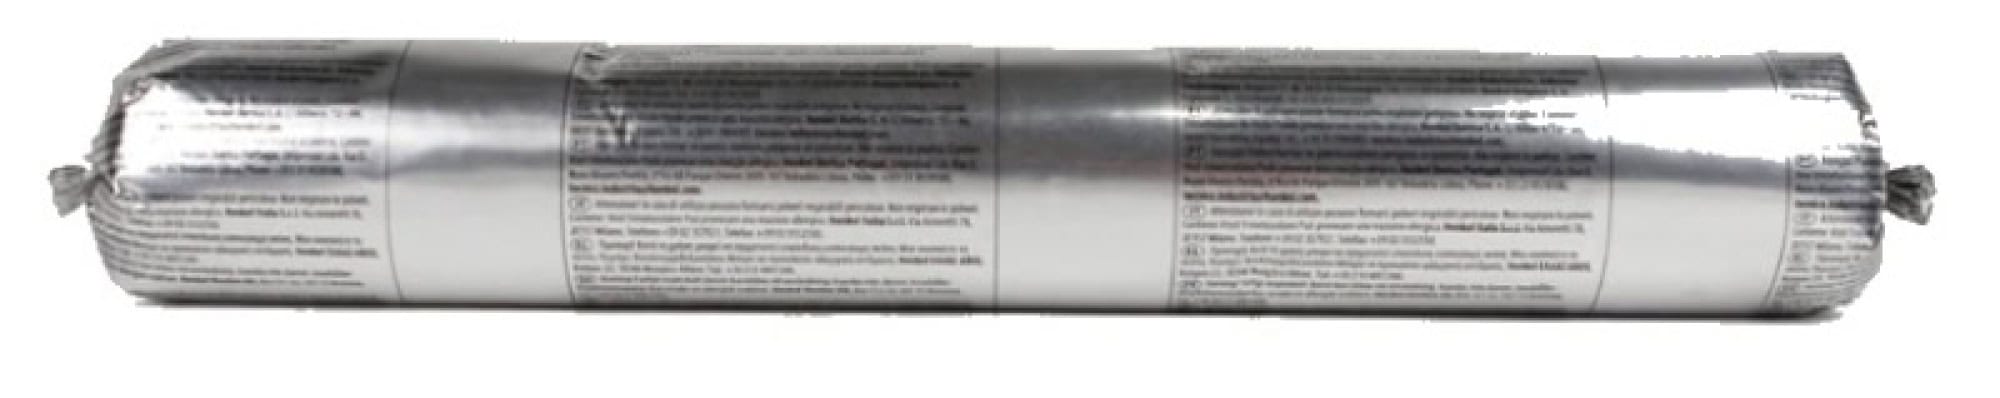 Henkel™ Teroson® Silanmodifizierter Polymer Kleb-/Dichtstoff MS 935, 570 ml Folienbeutel, Weiß, Thixotrop, 1K, 2480628, Für Elektronik Anwendungen